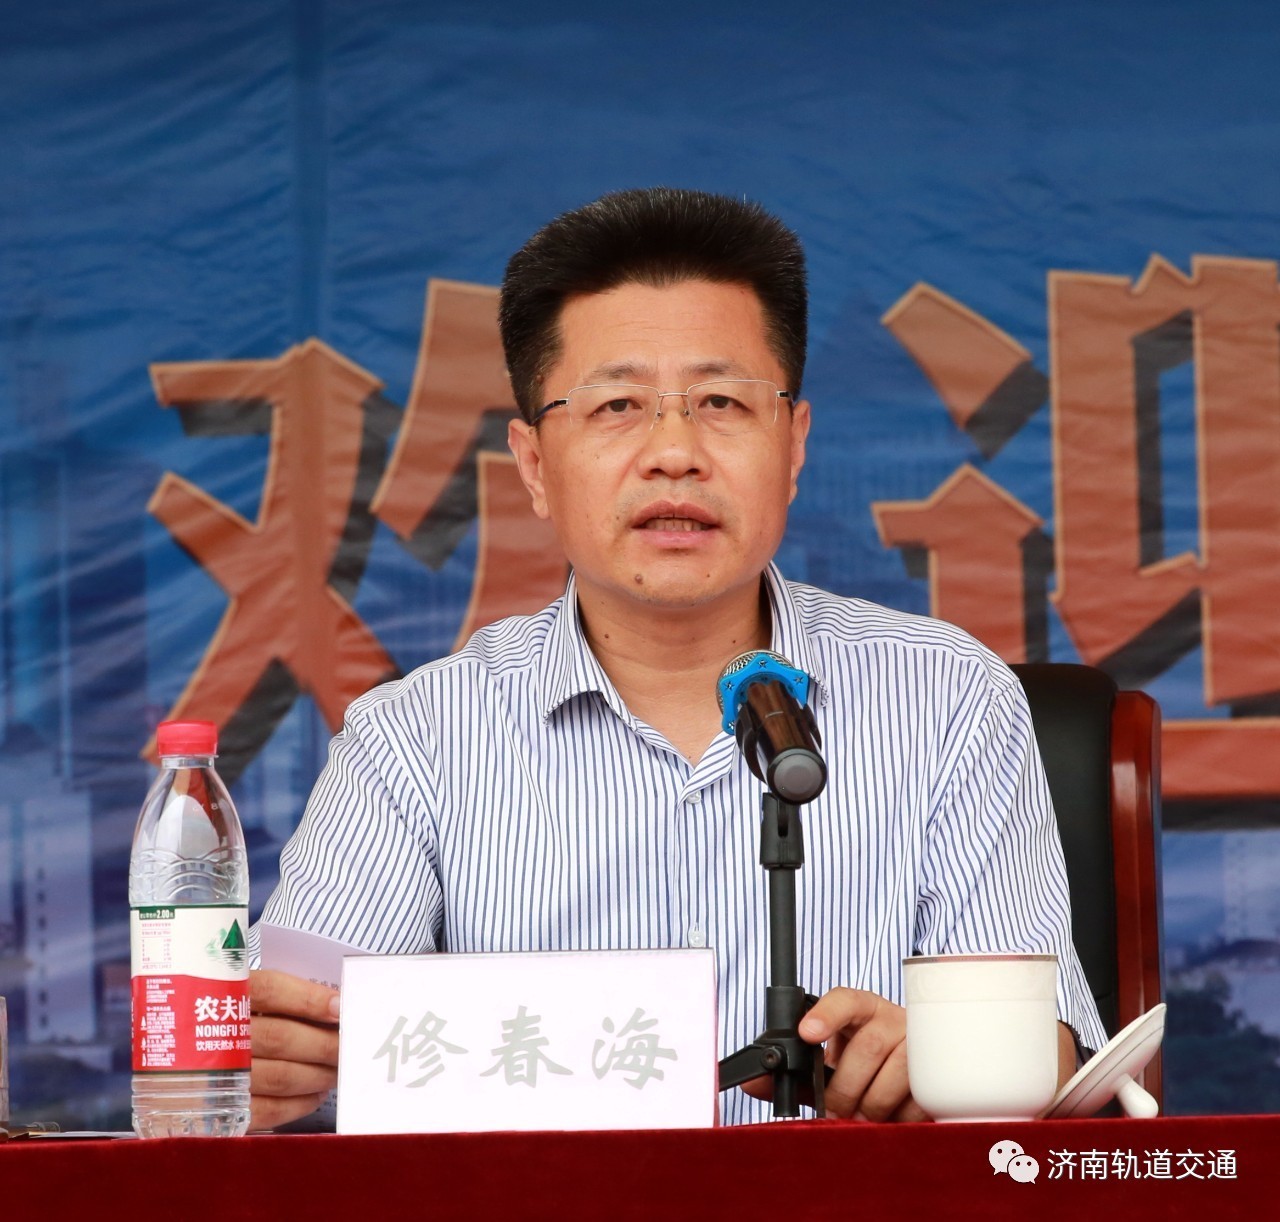 仪式上,修春海总经理代表集团党委书记,董事长陈思斌同志和全体干部